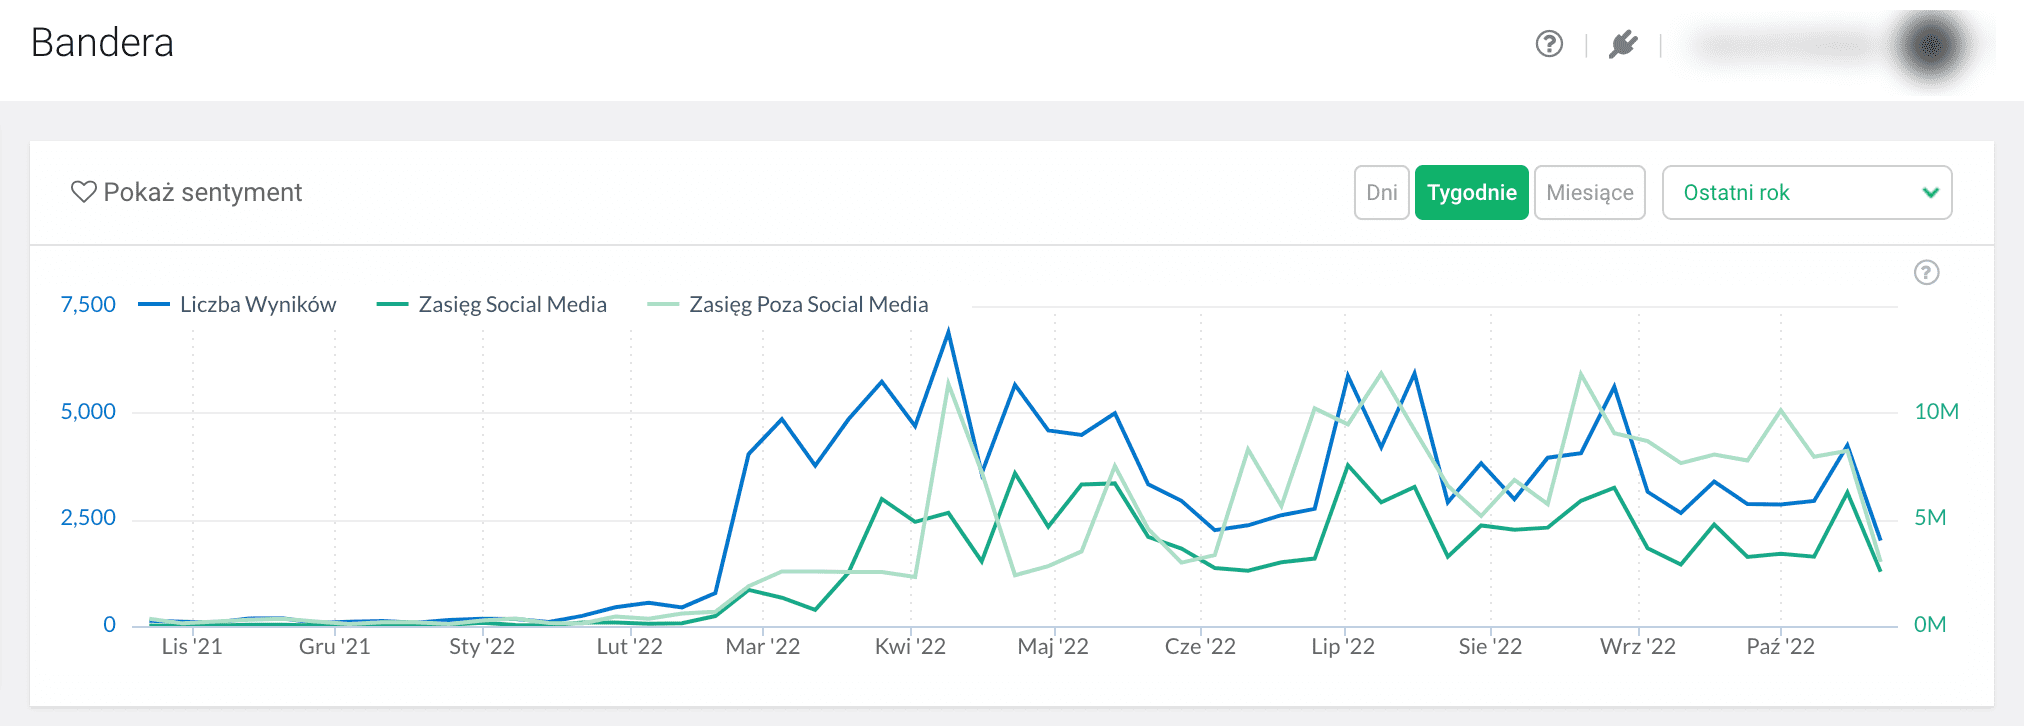 Wykresy wskazują jakim zainteresowaniem w ciągu ostatniego roku w polskim internecie cieszył się Bandera.